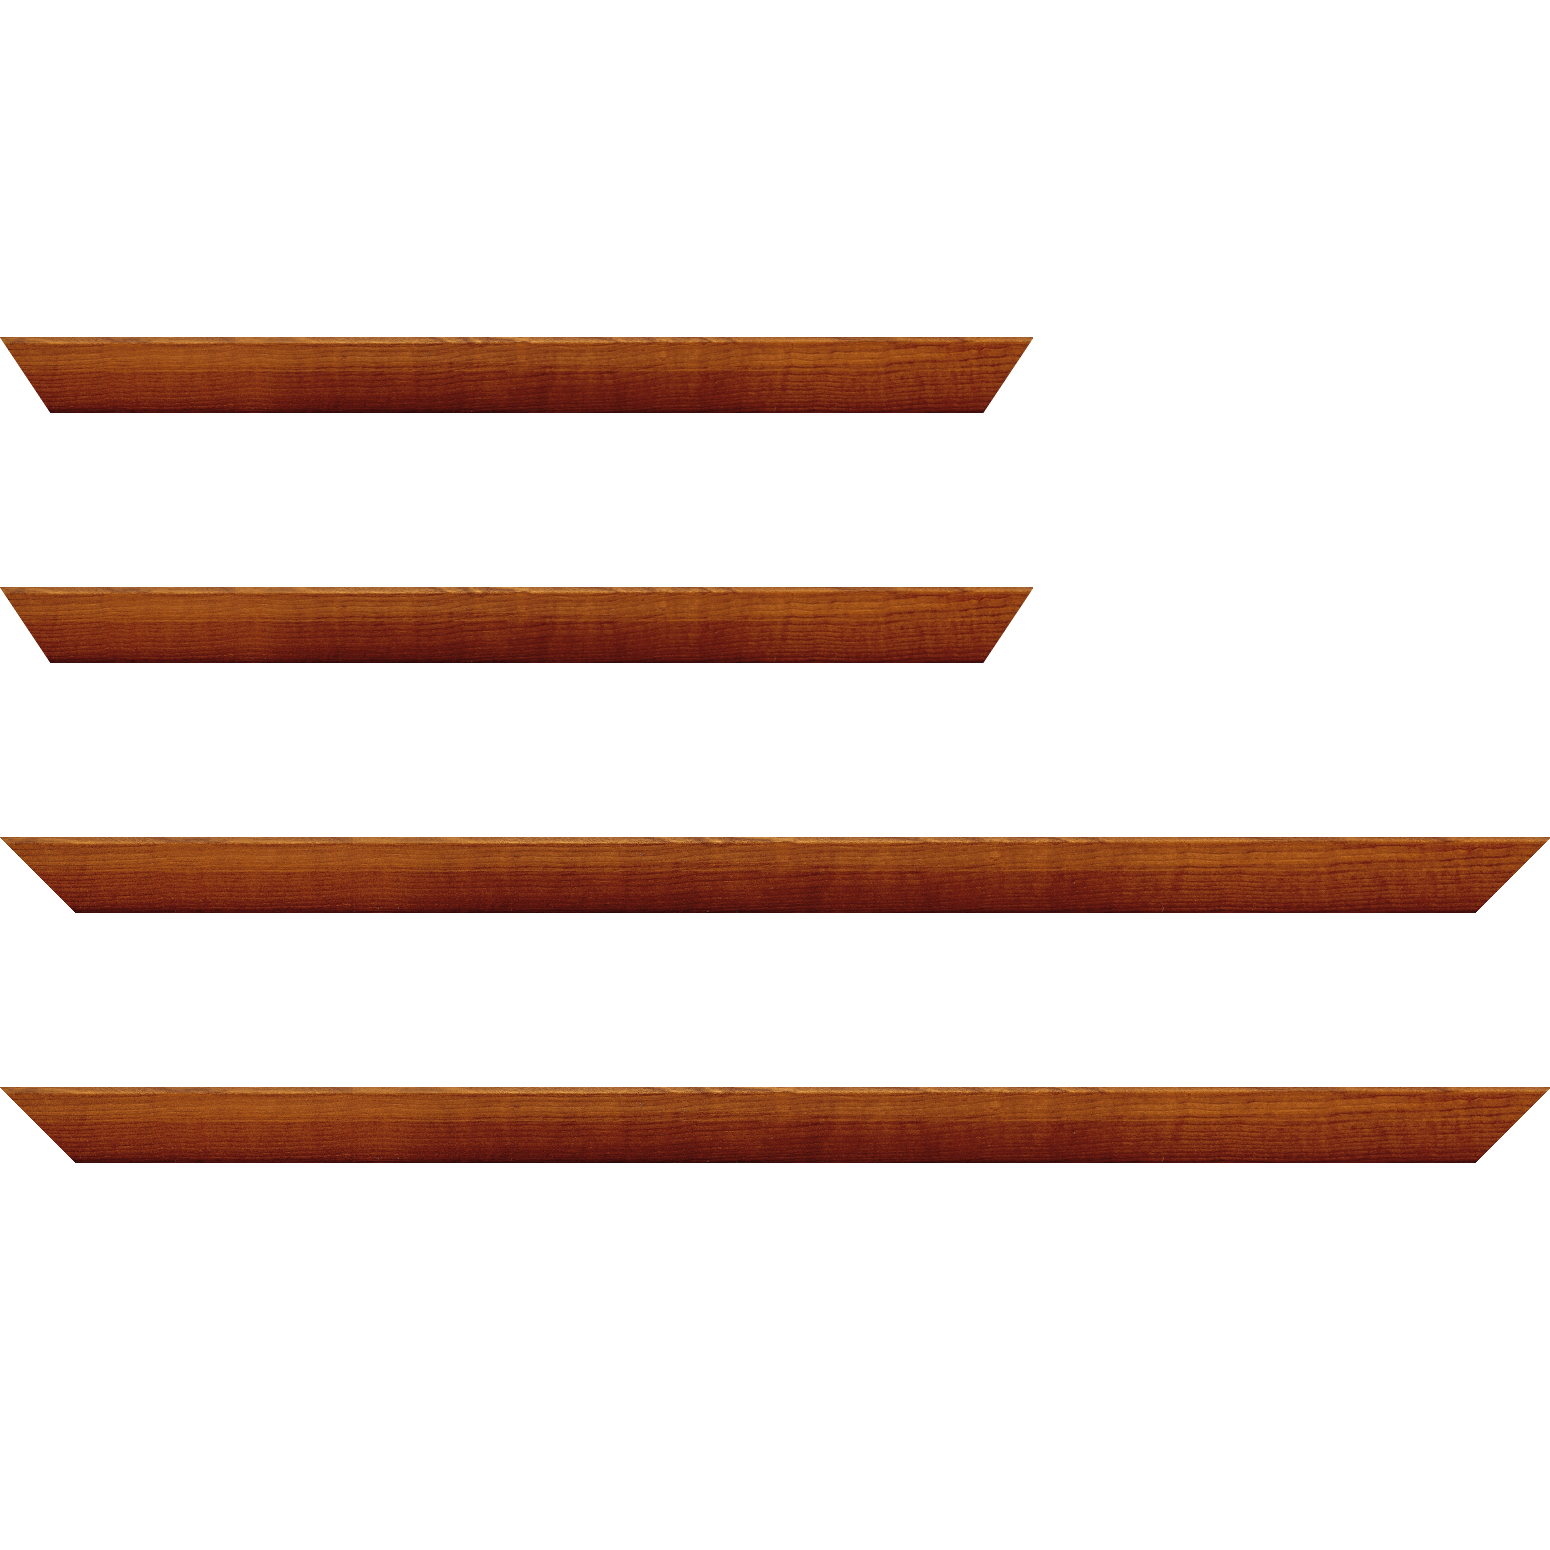 Baguette bois profil arrondi en pente plongeant largeur 2.4cm couleur marron miel finition vernis brillant,veine du bois  apparent (pin) ,